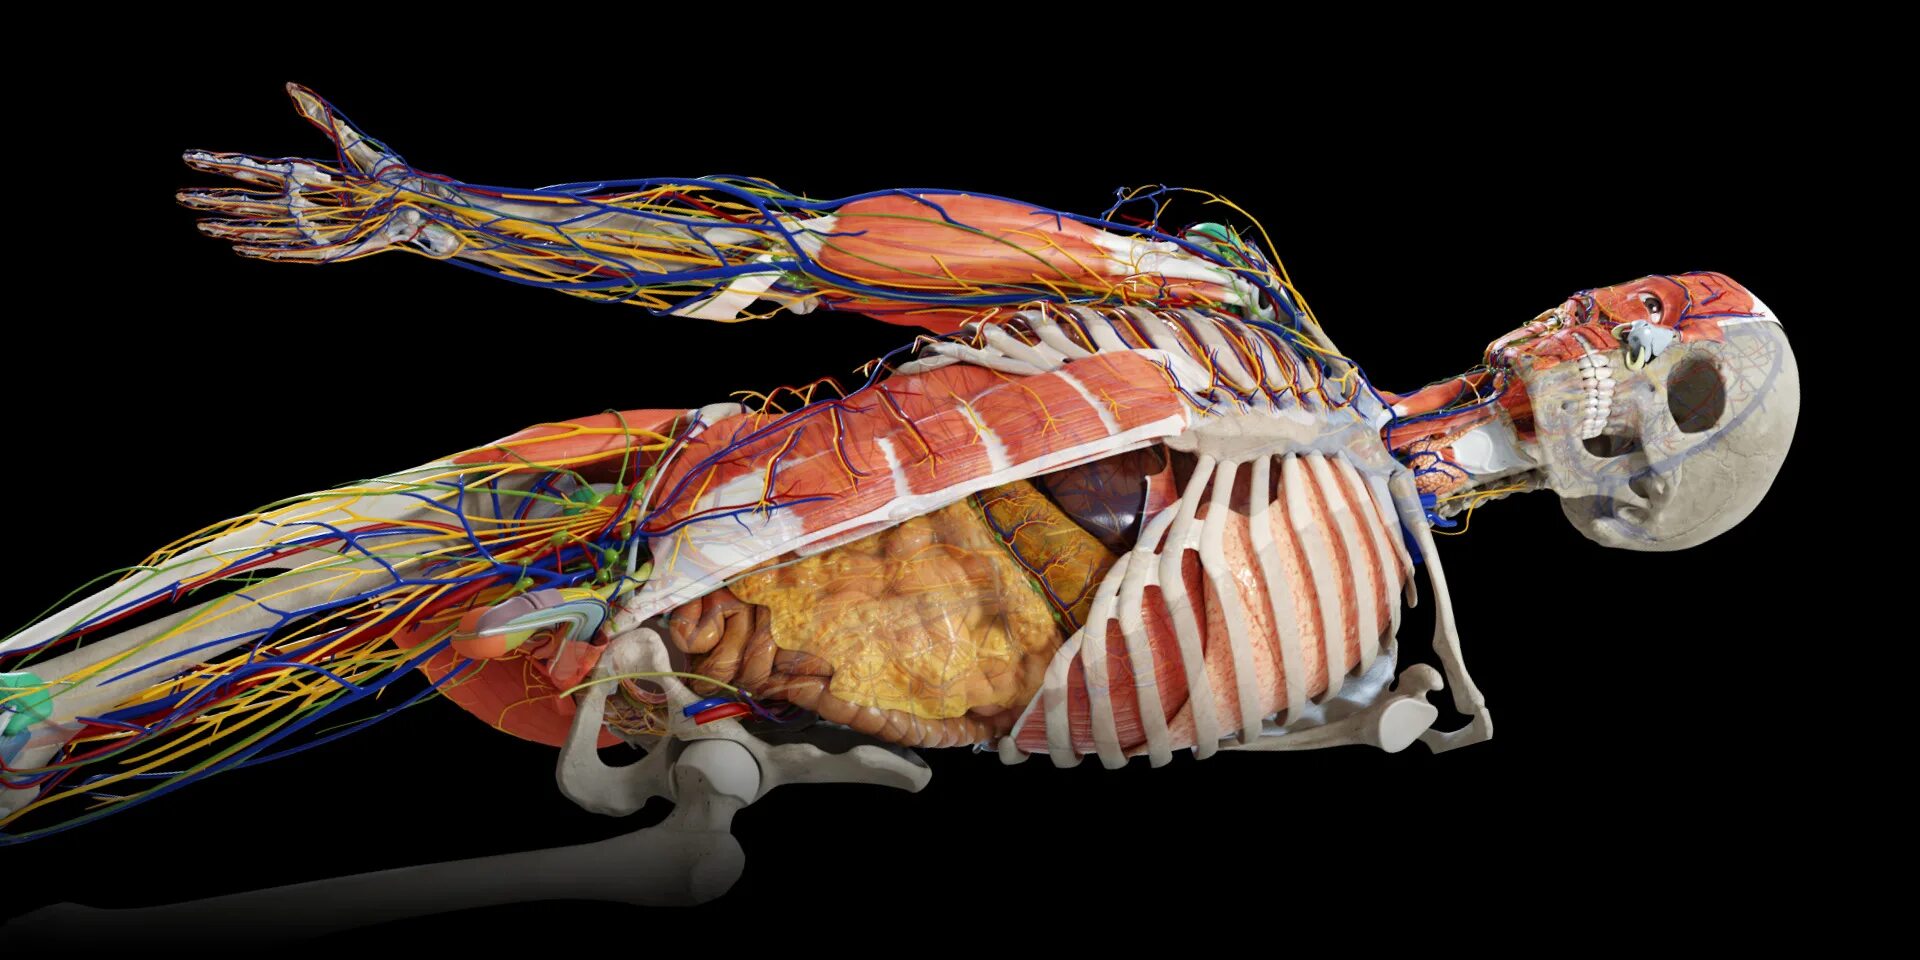 Анатомическая система организма. Анатомия человека внутренние органы 3д атлас. Анатомический атлас человека 3д. Anatomy Learning 3d анатомический атлас. Anatomy 3d мышцы.